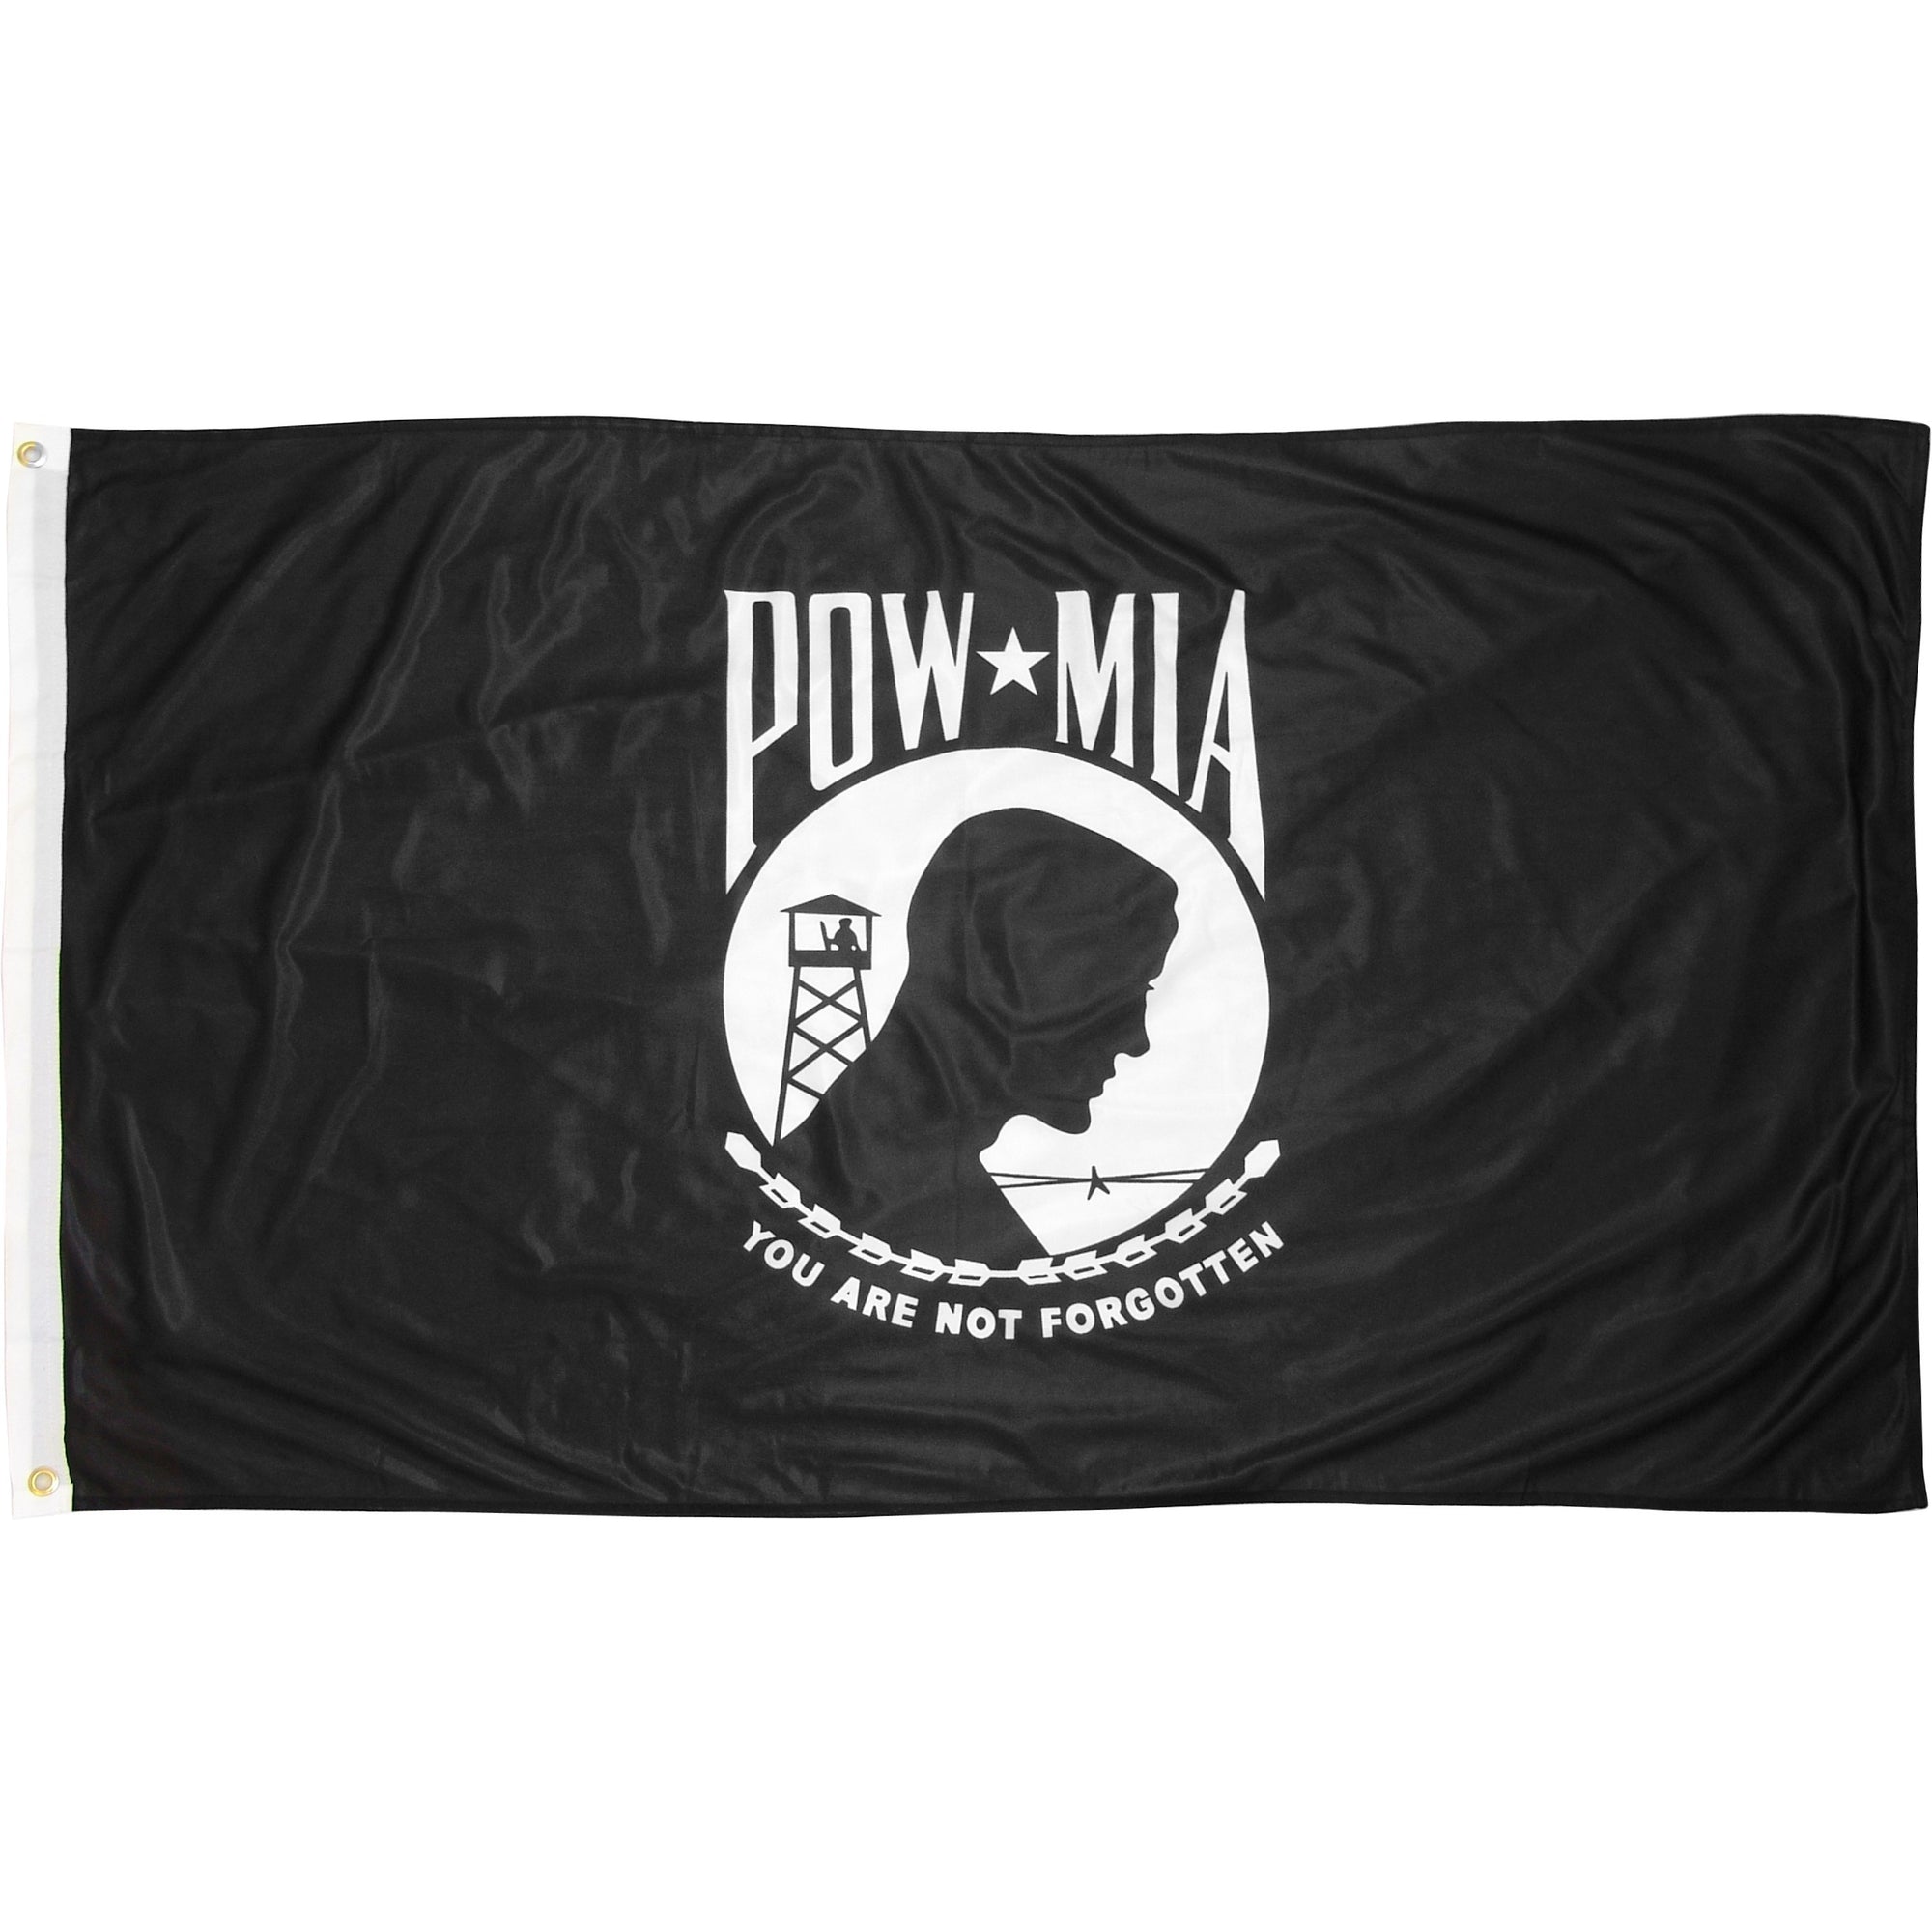 POW-MIA 2' x 3' Outdoor Nylon Flags